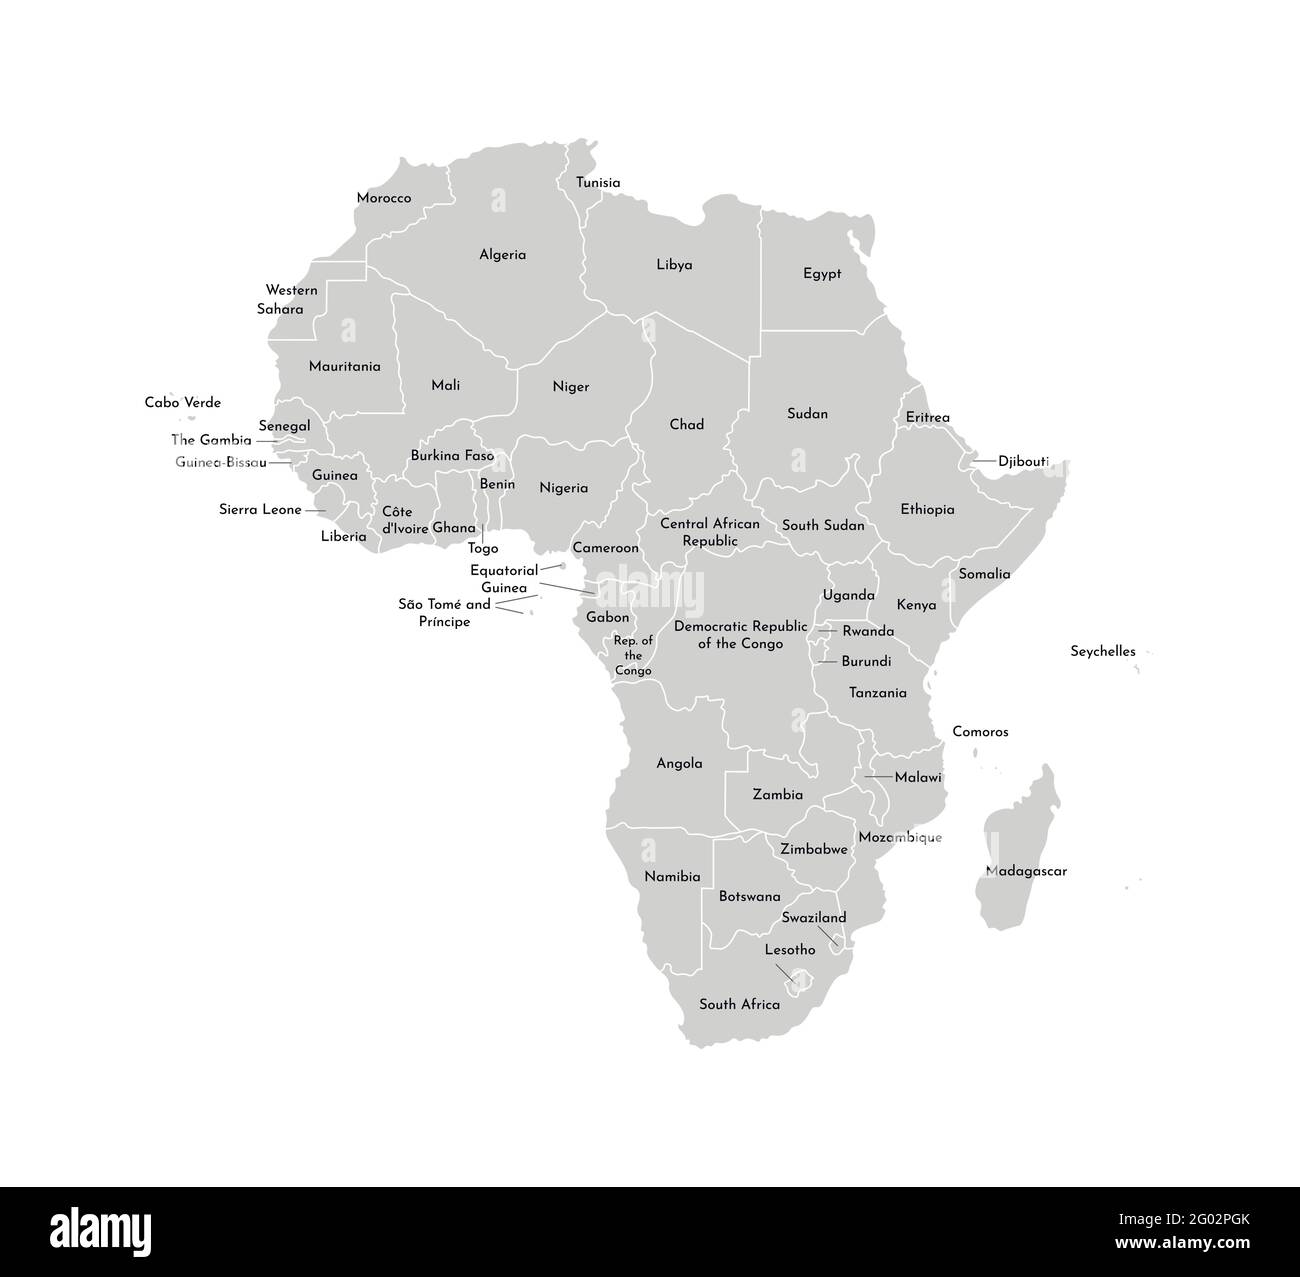 Vektor isolierte Illustration mit afrikanischen Kontinent mit Grenzen und Namen aller Staaten. Politische Karte. Weißer Hintergrund und Umriss, graue Formen. Stock Vektor